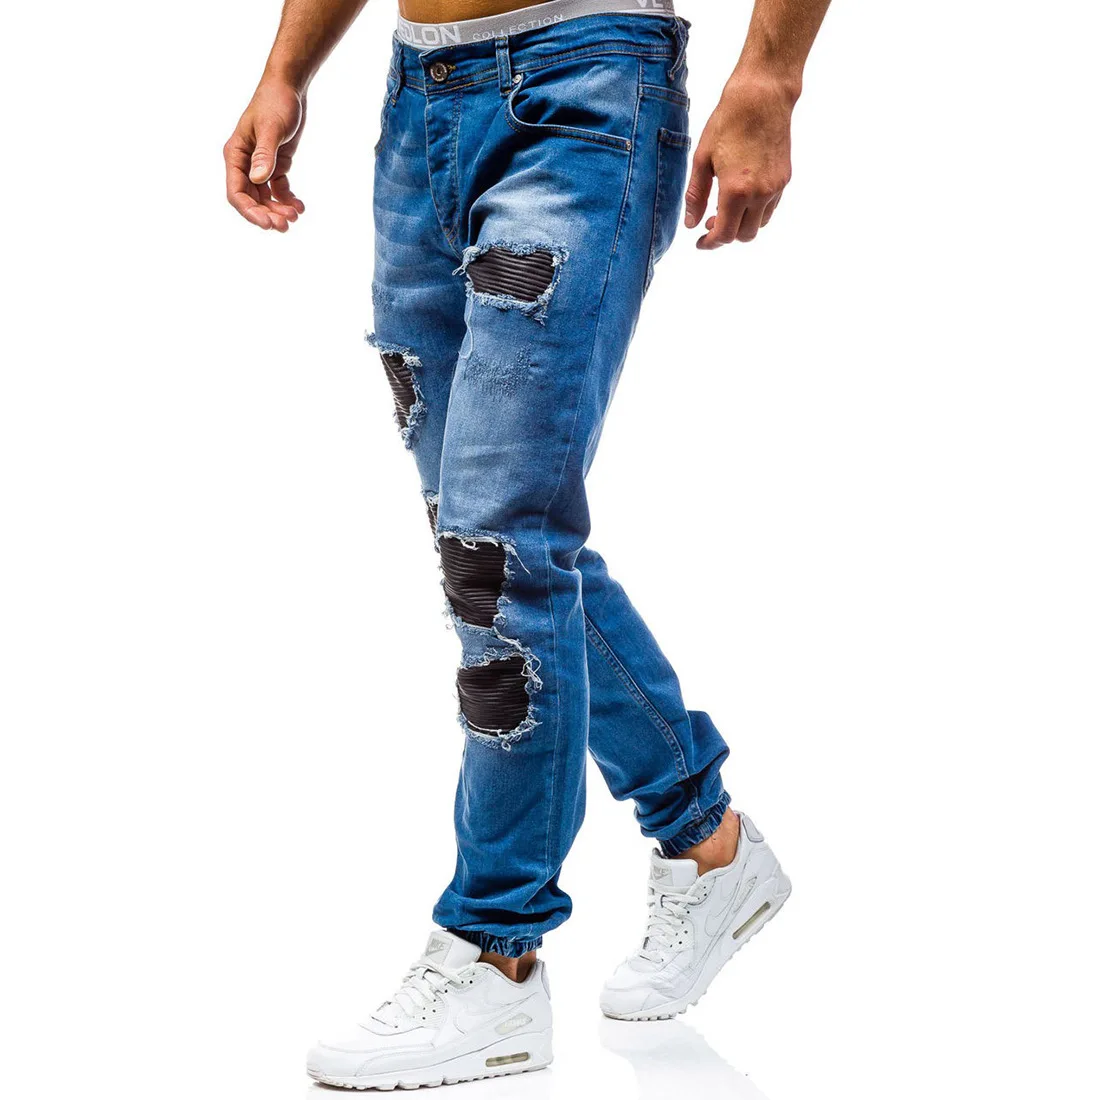 Aowofs, стиль, мужские брюки с дырками, средняя талия, тренд, джинсы, 2 цвета 6013